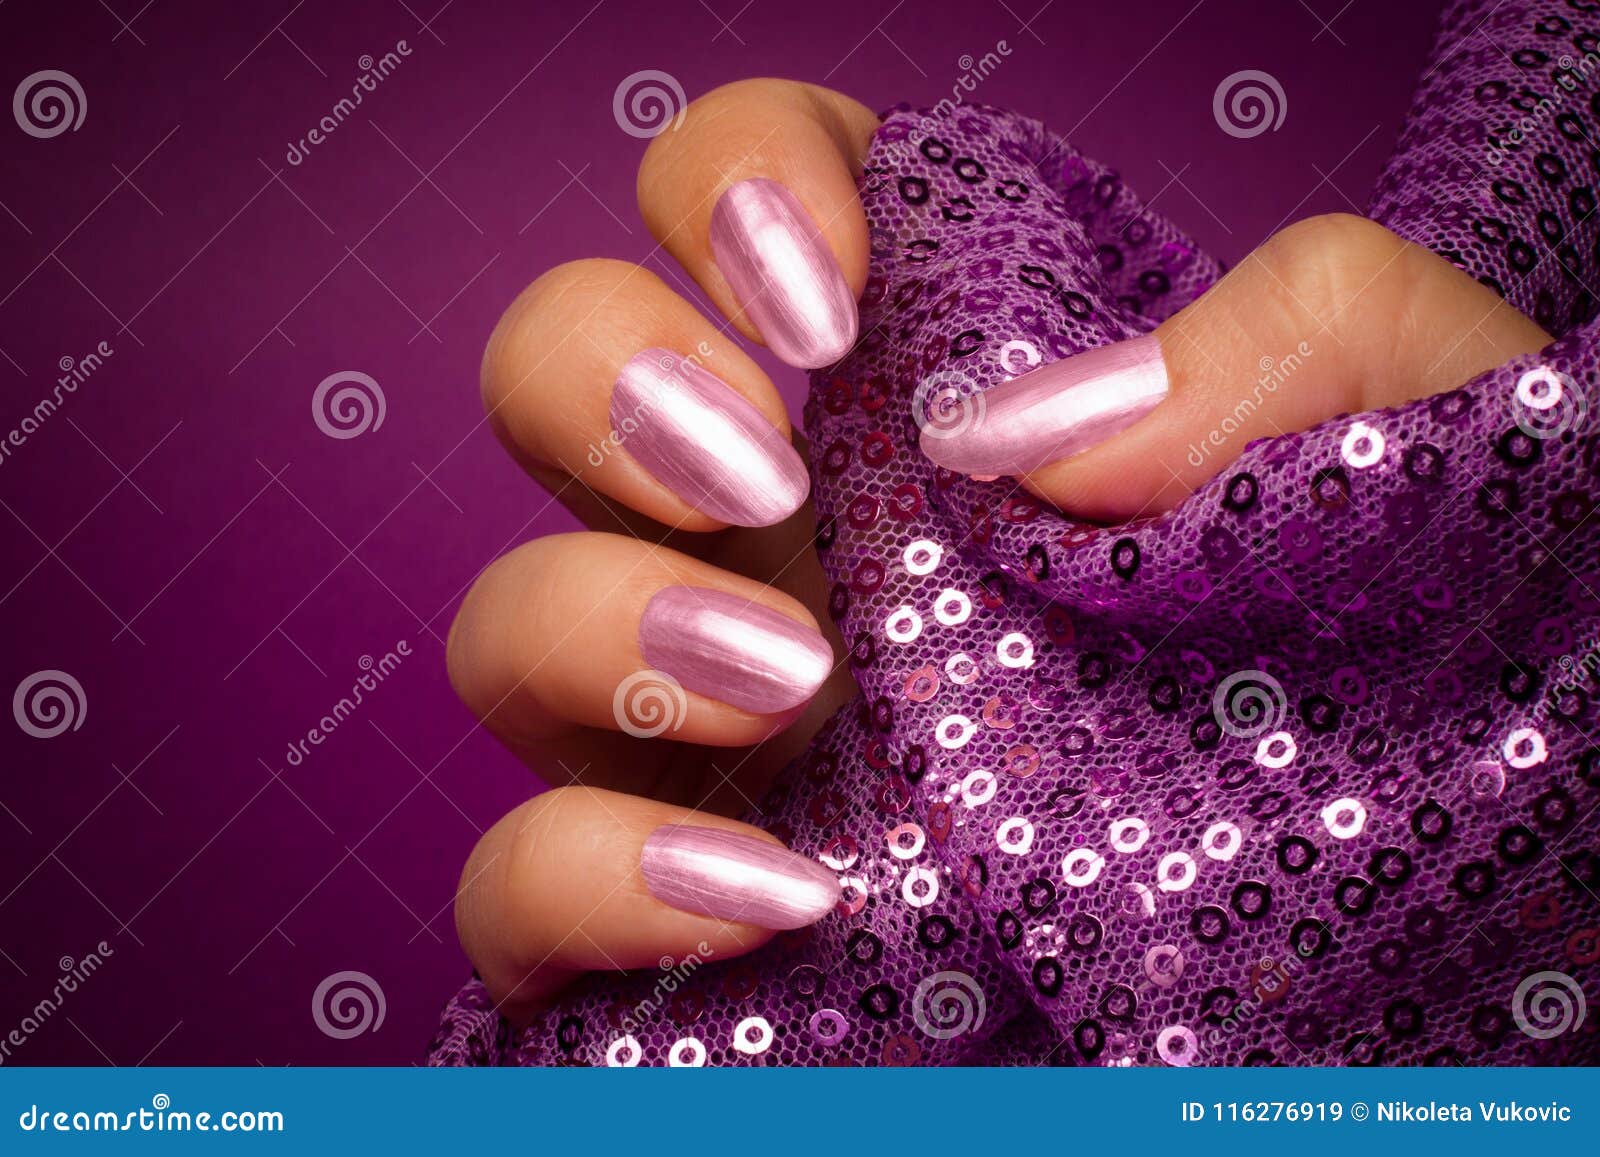 Purple Shiny Nails Manicure Stock Image - Image of cosmetics, holding ...